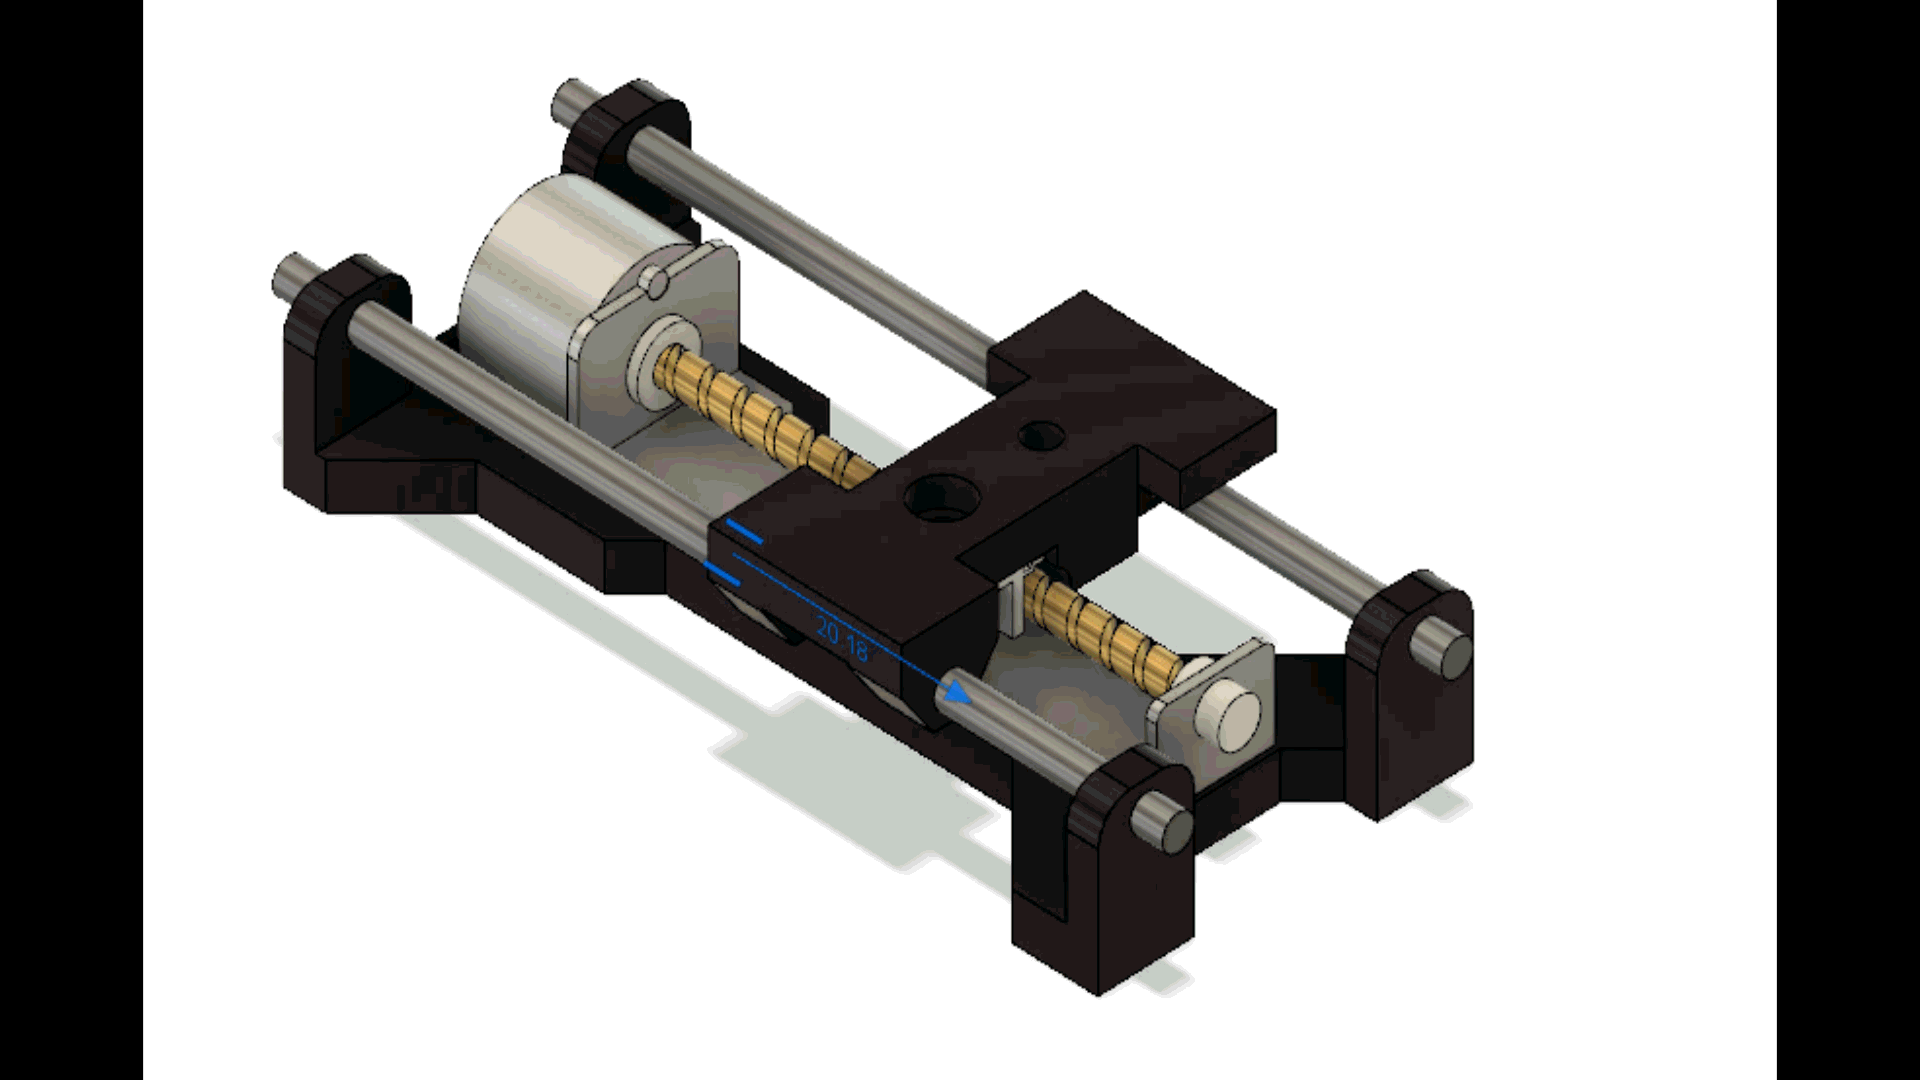 CD ROM stepper motor holder for CNC (cnc için mini step motor tutucu)